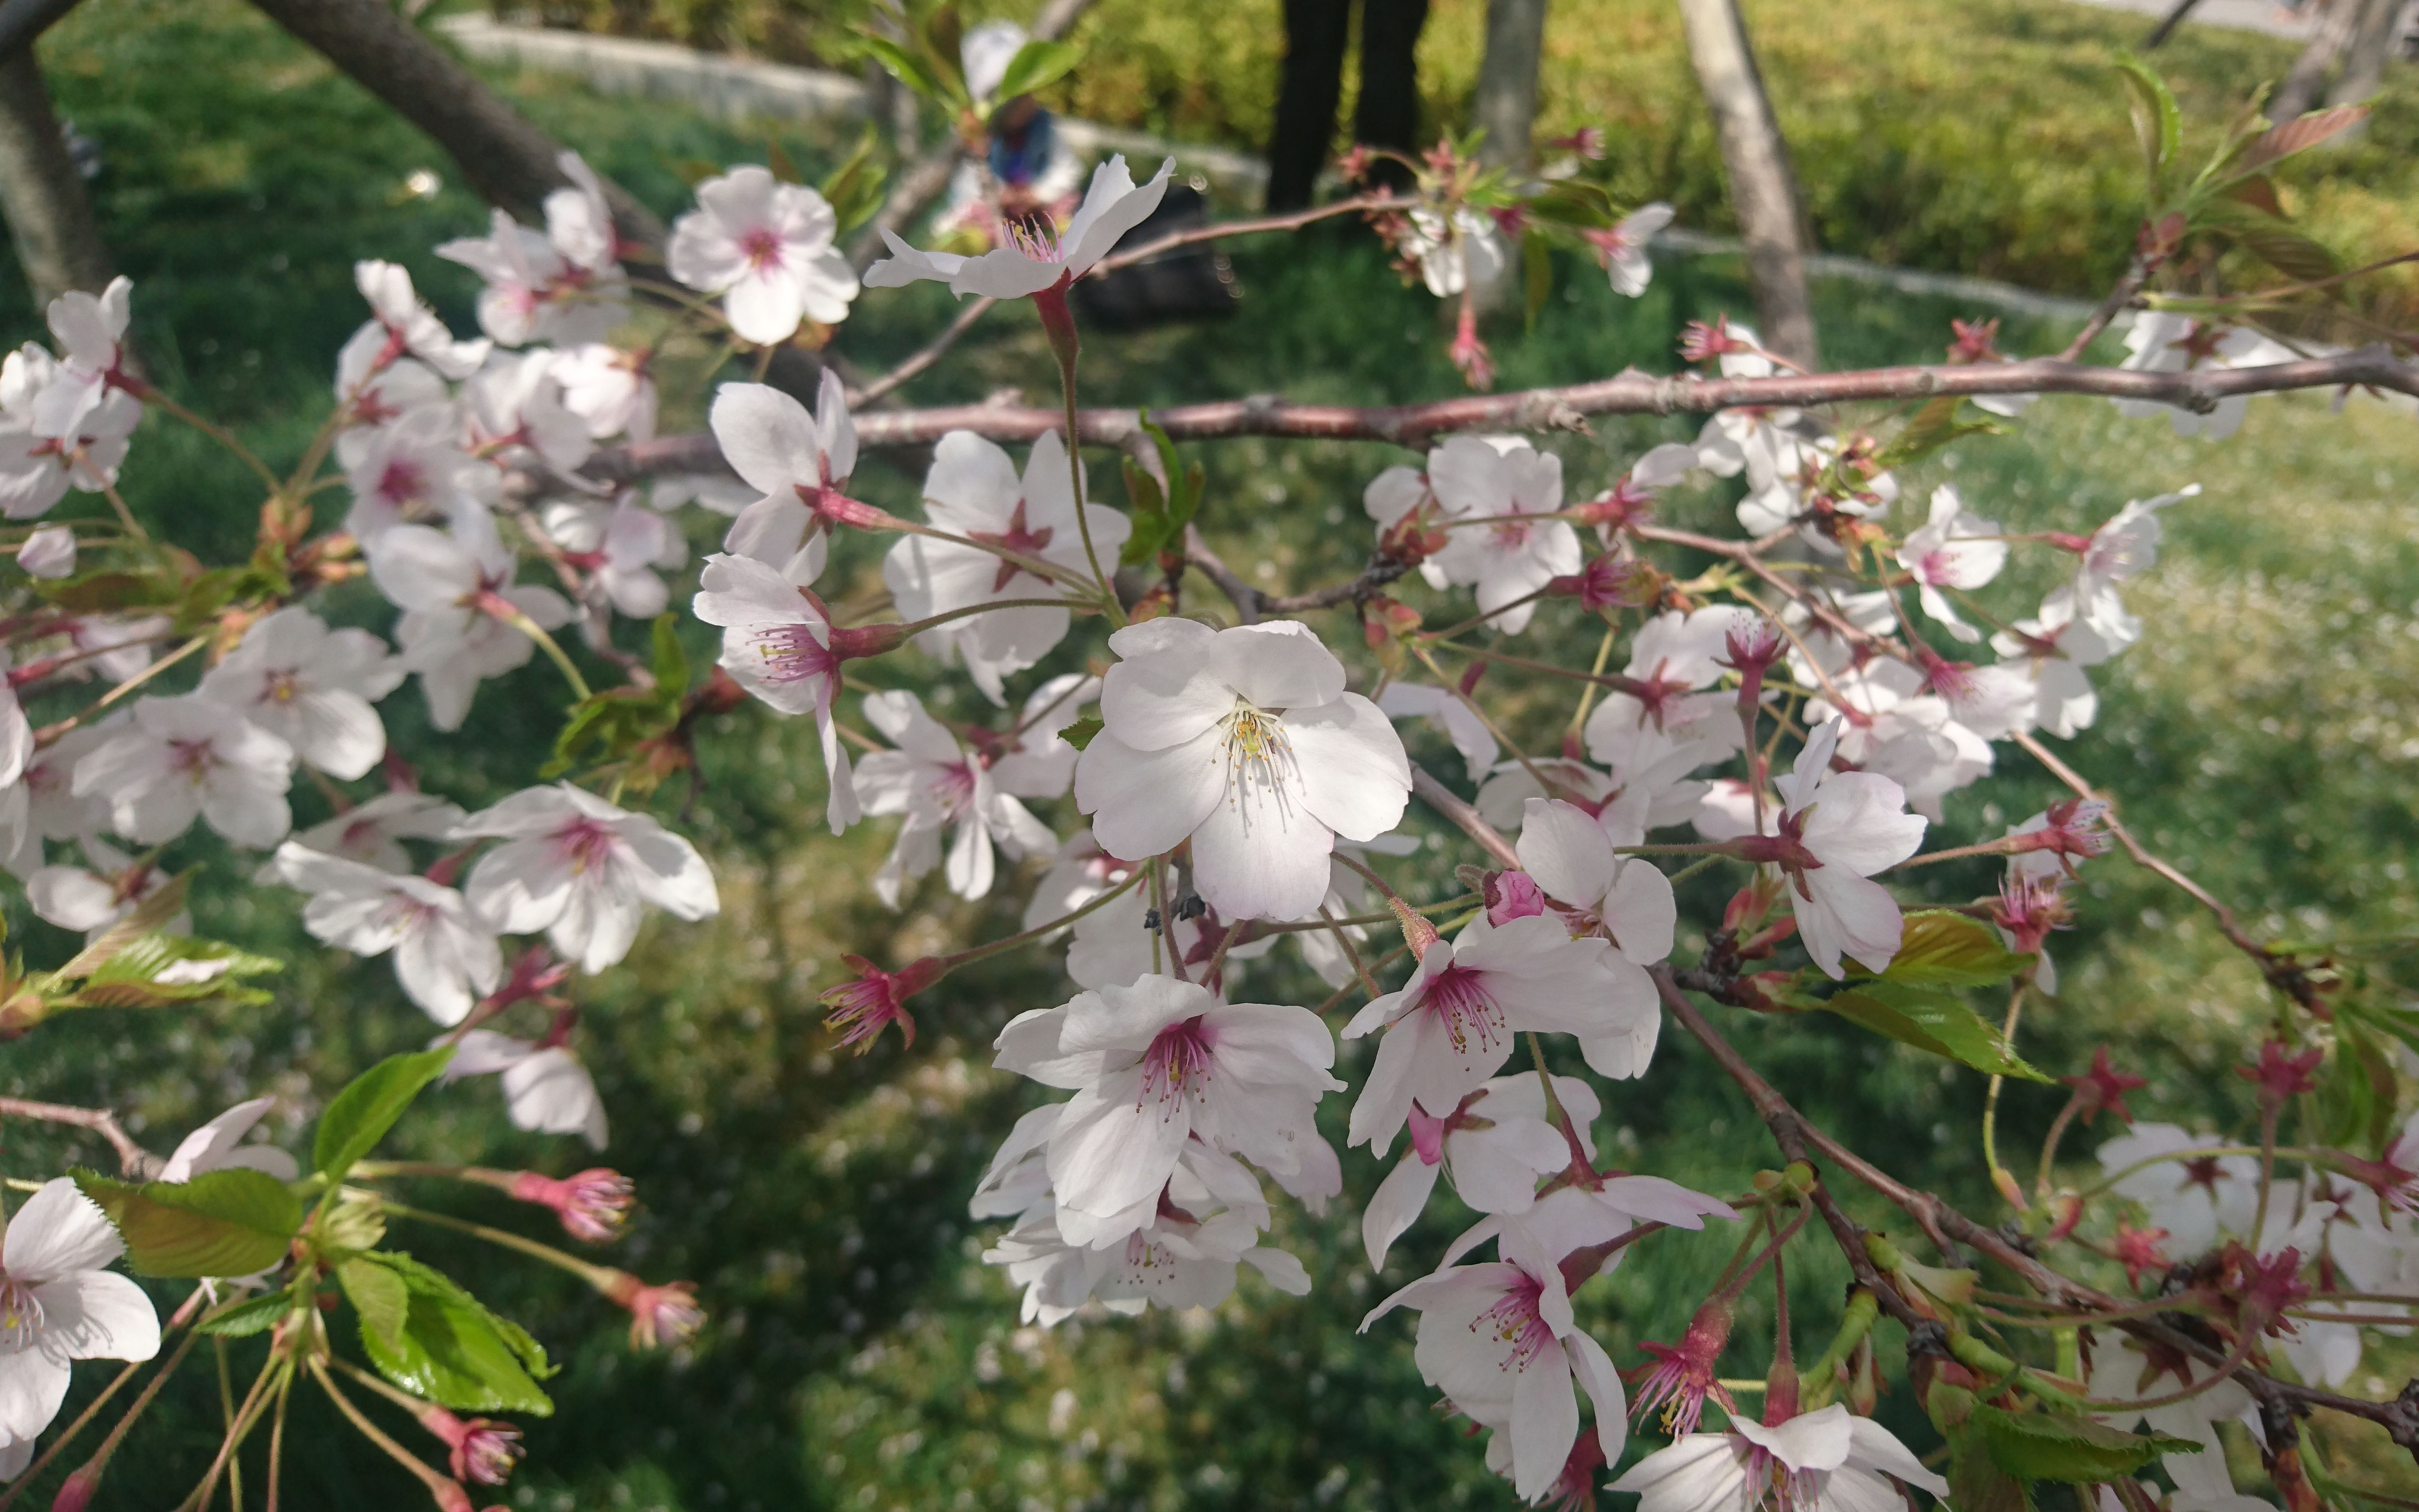 牟平龙湖樱花节图片